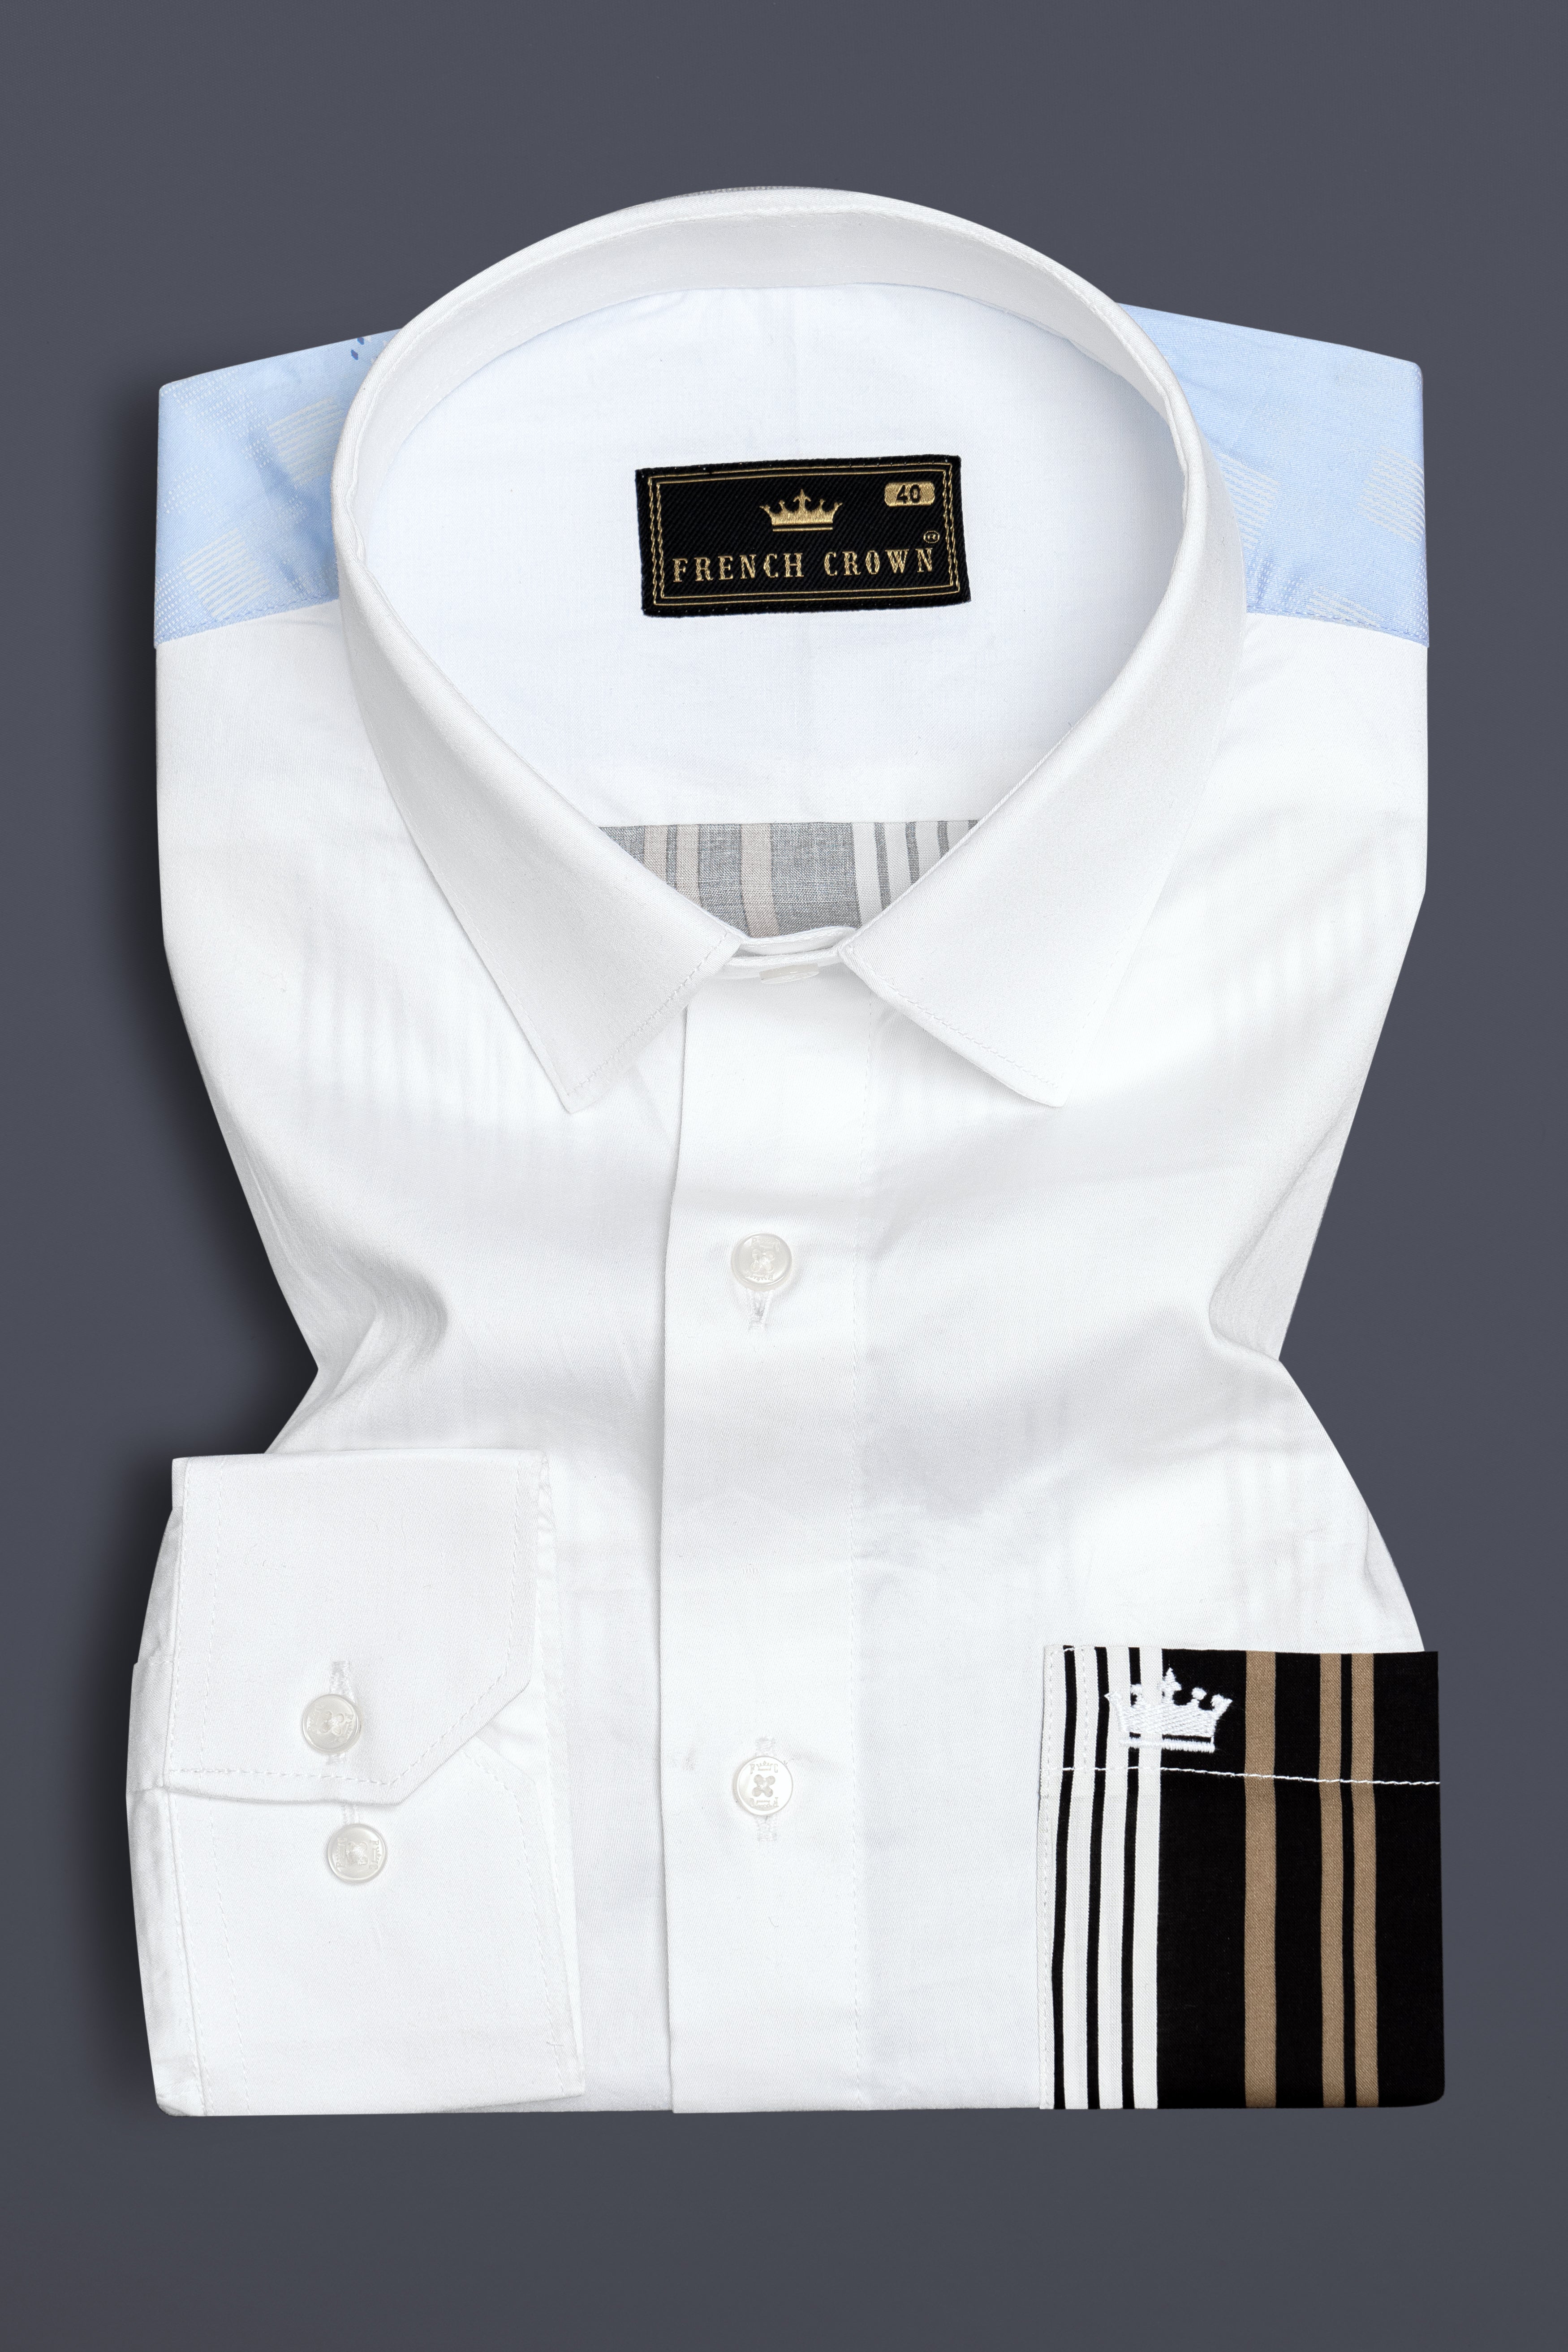 Bright White Striped Back Super Soft Premium Cotton Designer Shirt